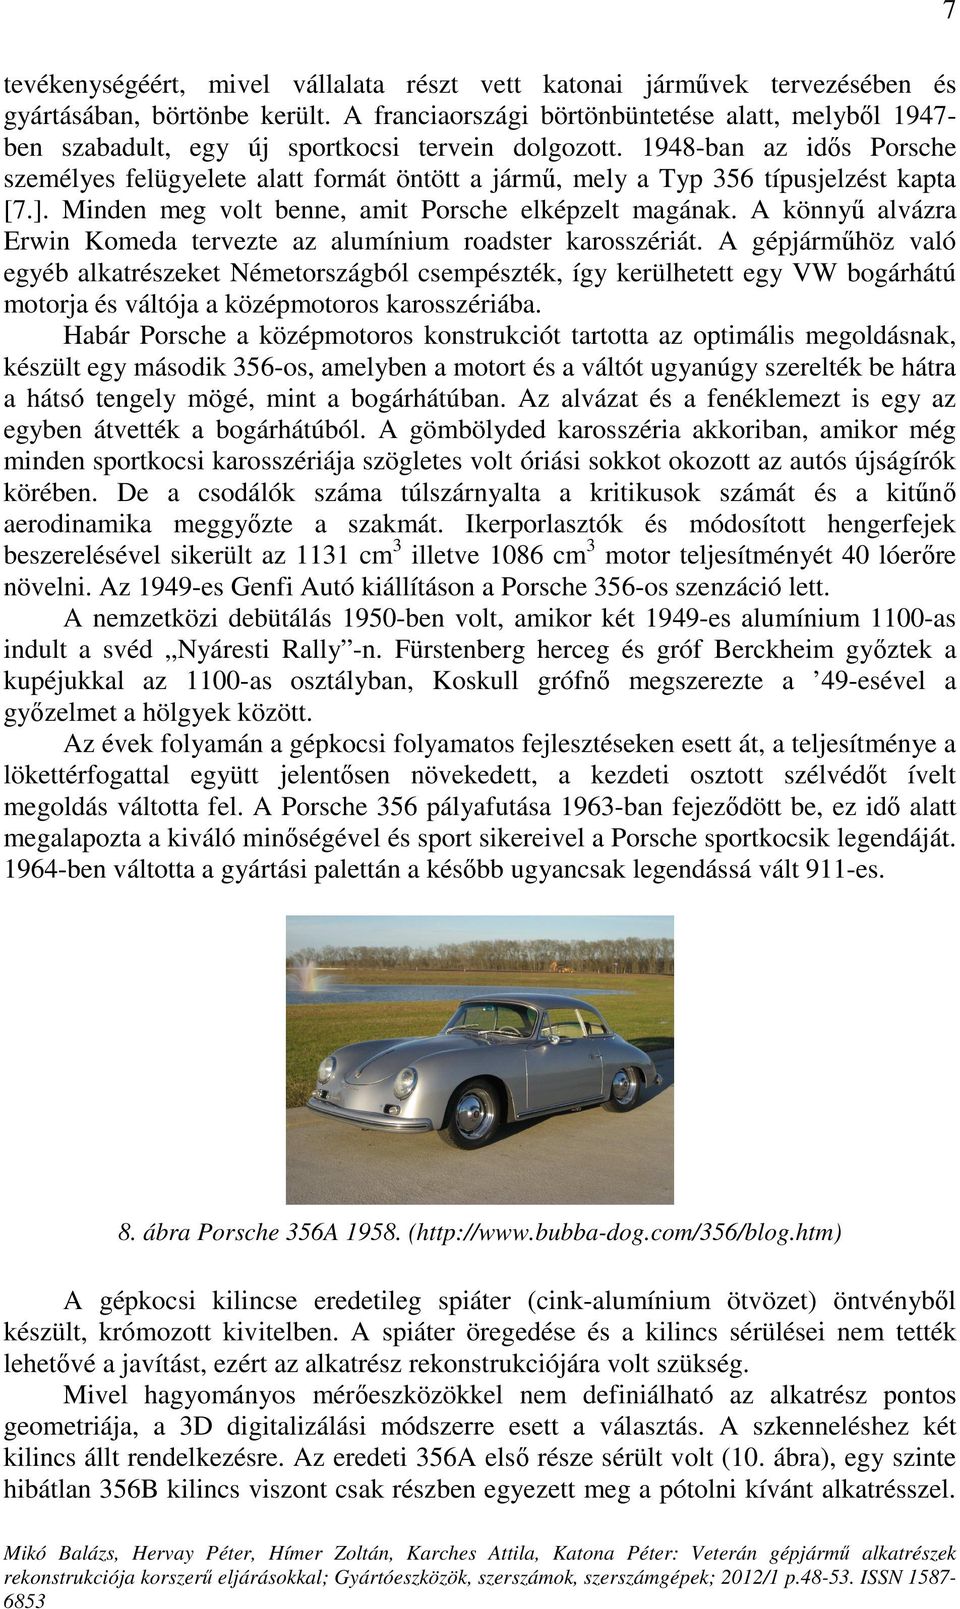 1948-ban az idıs Porsche személyes felügyelete alatt formát öntött a jármő, mely a Typ 356 típusjelzést kapta [7.]. Minden meg volt benne, amit Porsche elképzelt magának.